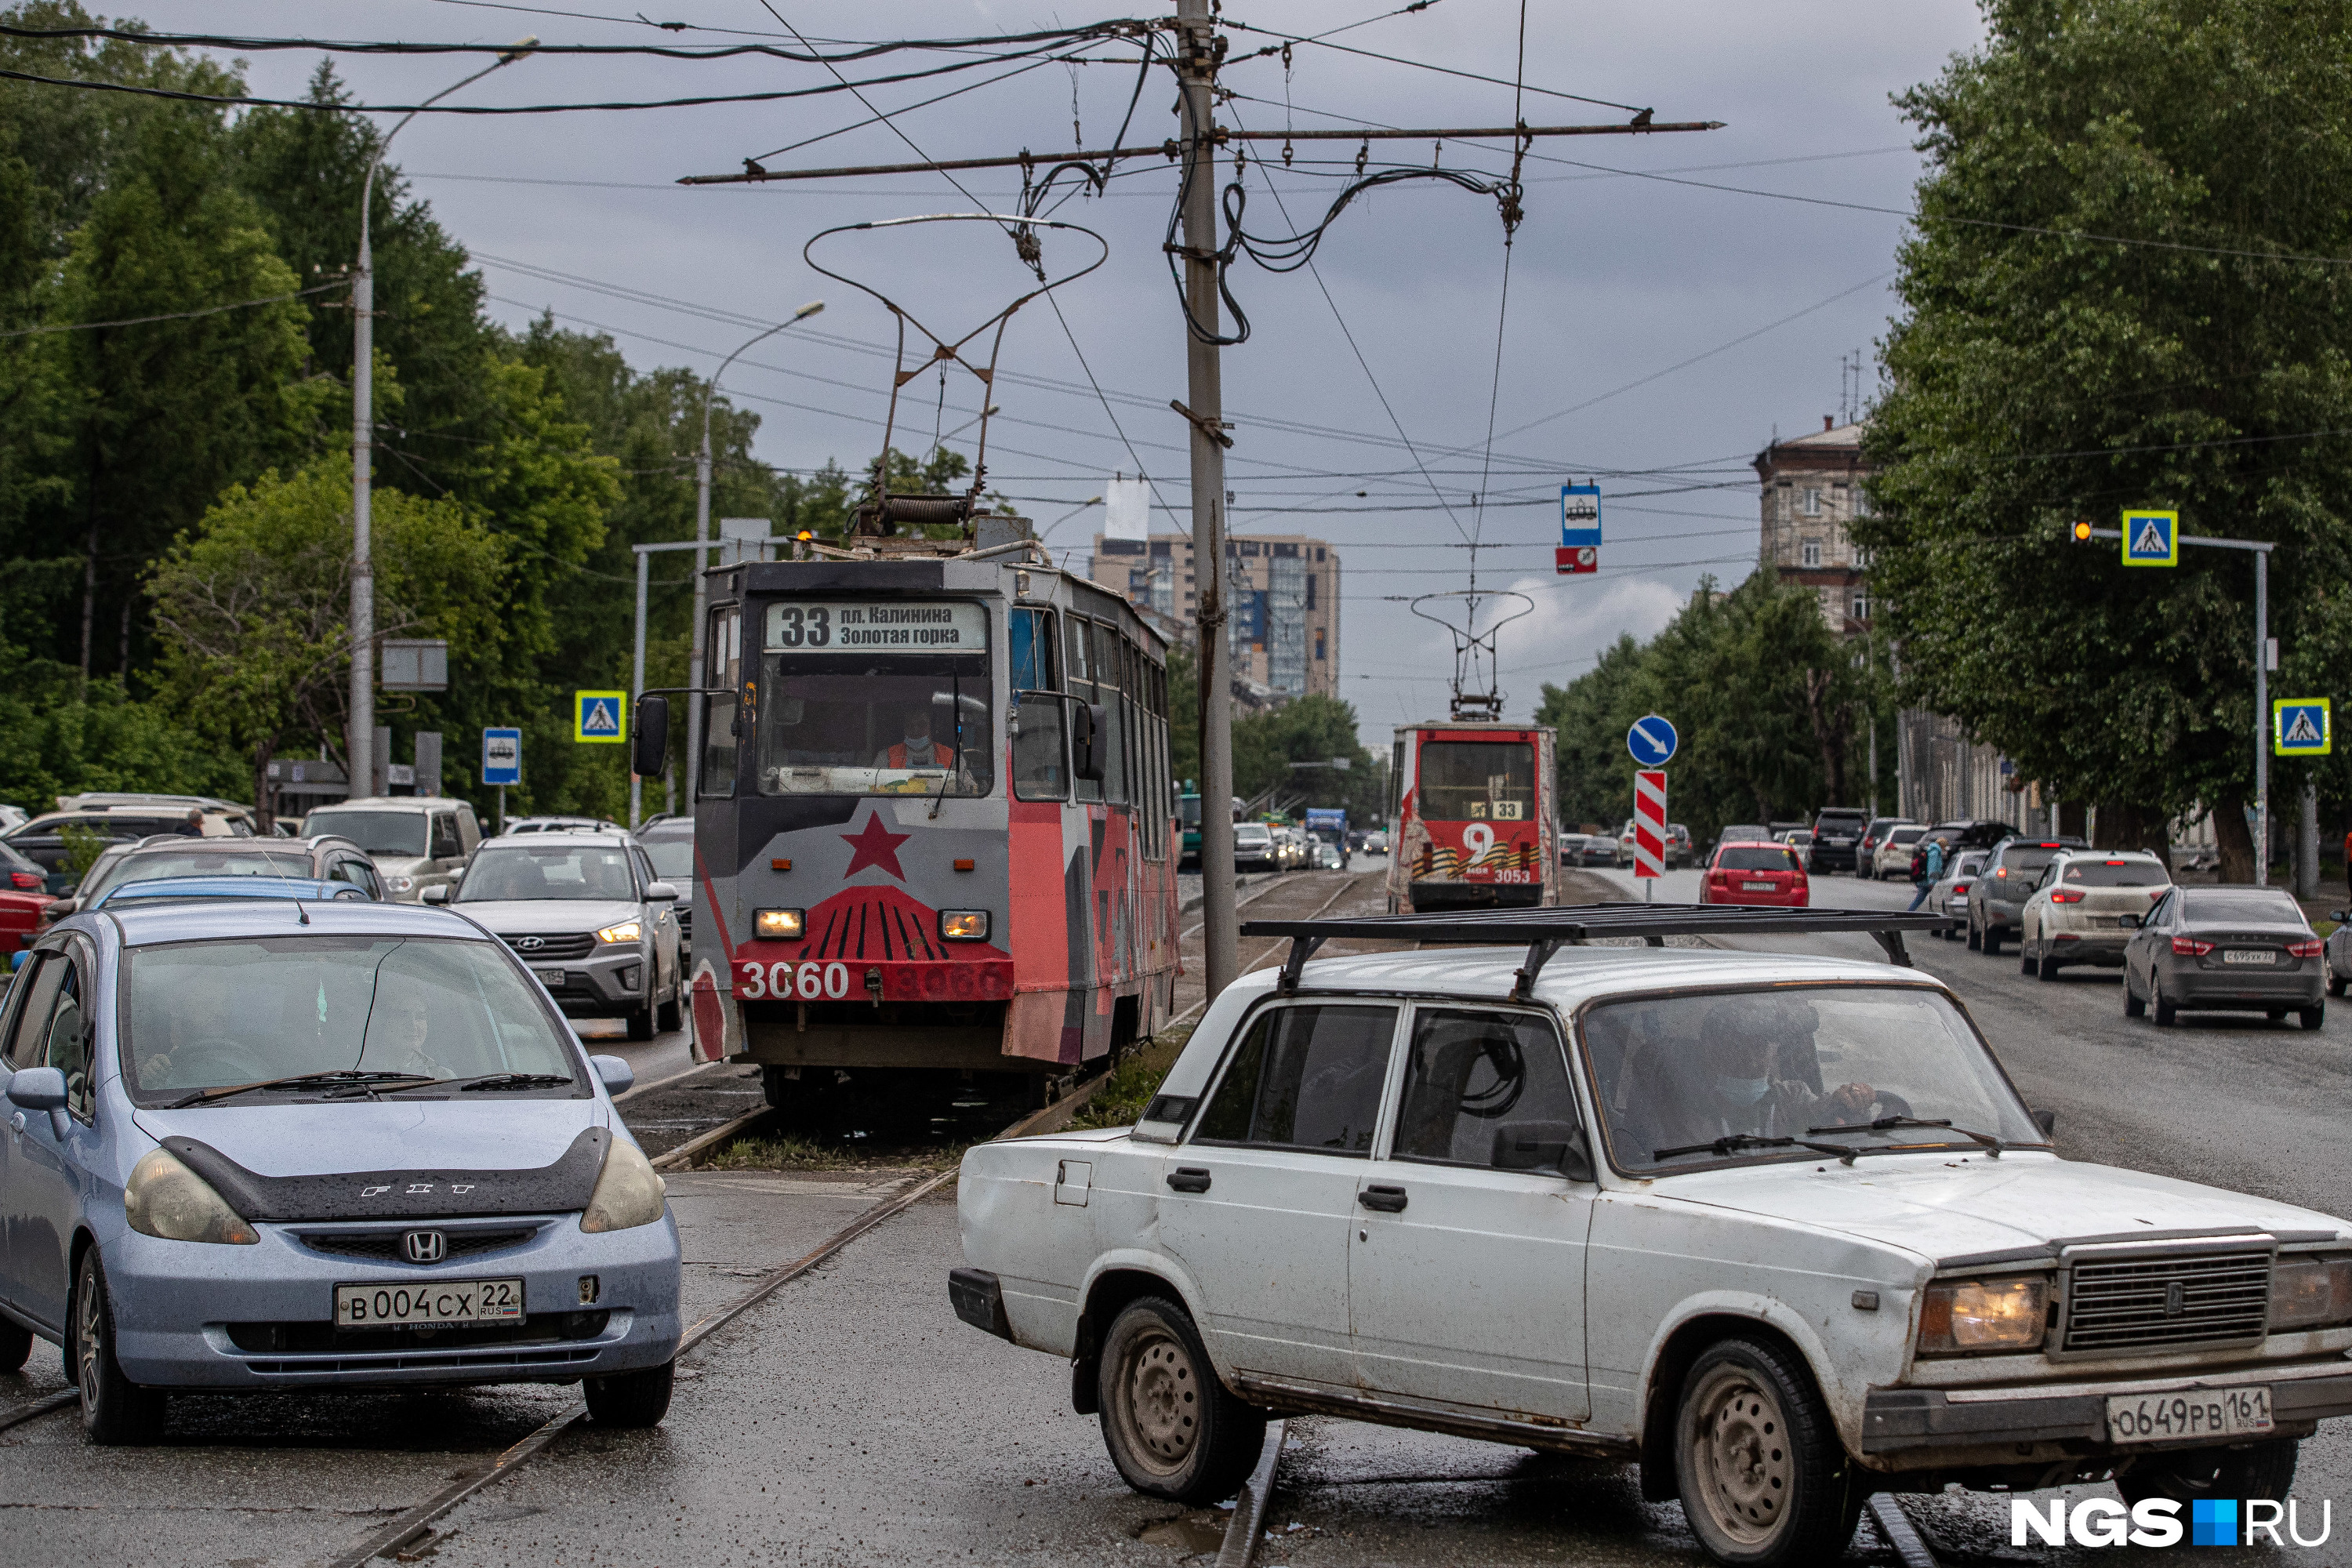 Пробку на проспекте Дзержинского усугубляют и припаркованные вдоль улицы автомобили. Чтобы расширить проезд, парковку хотят запретить хотя бы в районе новых остановочных платформ трамвая